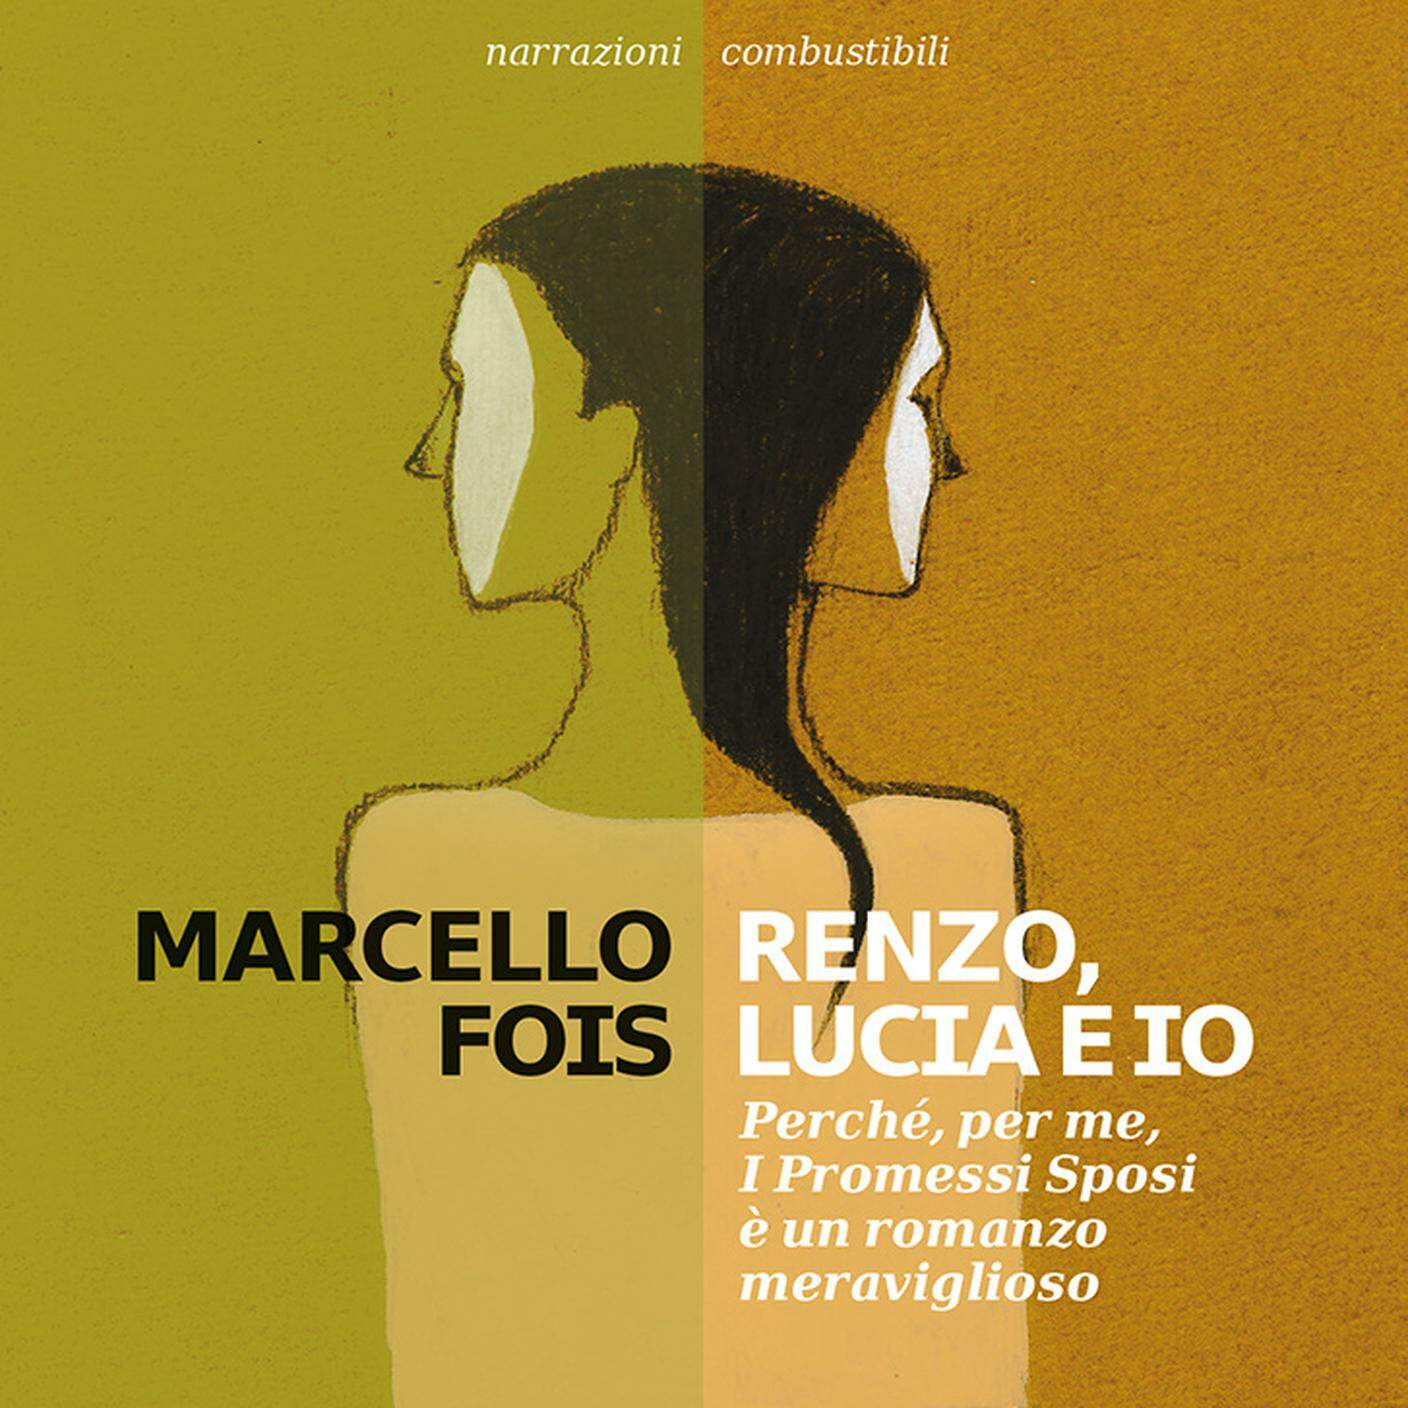 "Renzo, Lucia e Io", Marcello Fois, Add Editore (dettaglio copertina)